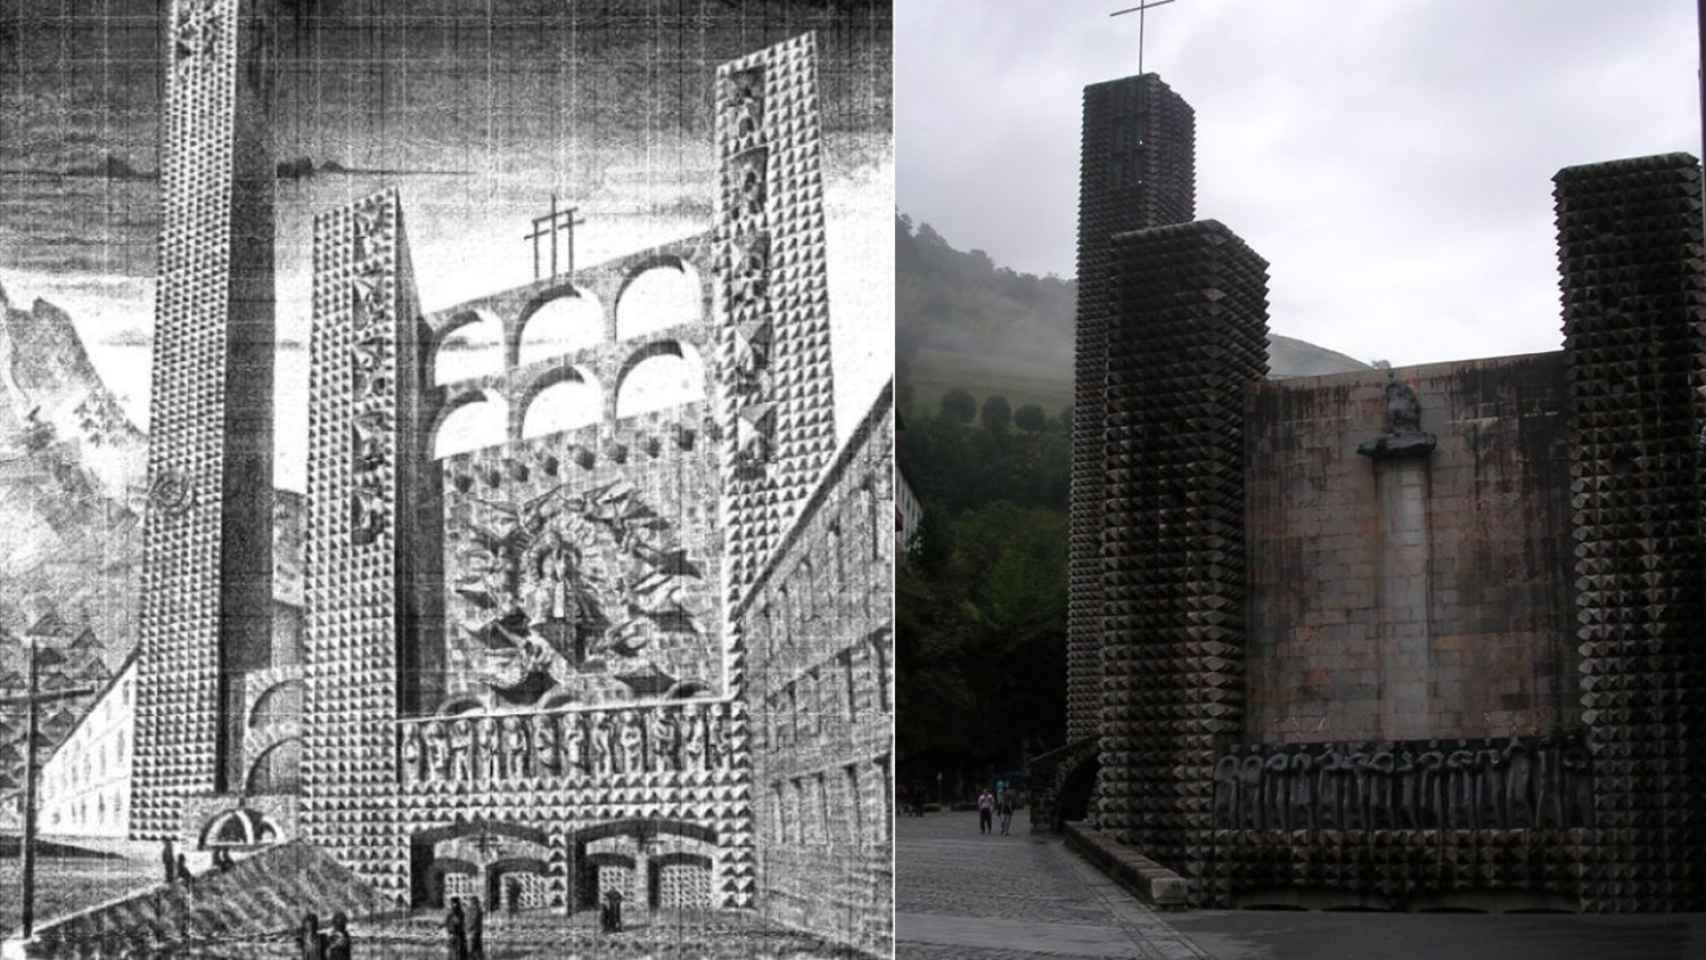 La fachada del concurso de Aránzazu a la izquierda, de tendencia clásica. A la derecha, la construida (con La piedad de Oteiza en la coronación el friso de 14 apóstoles sobre las puertas de Chillida).